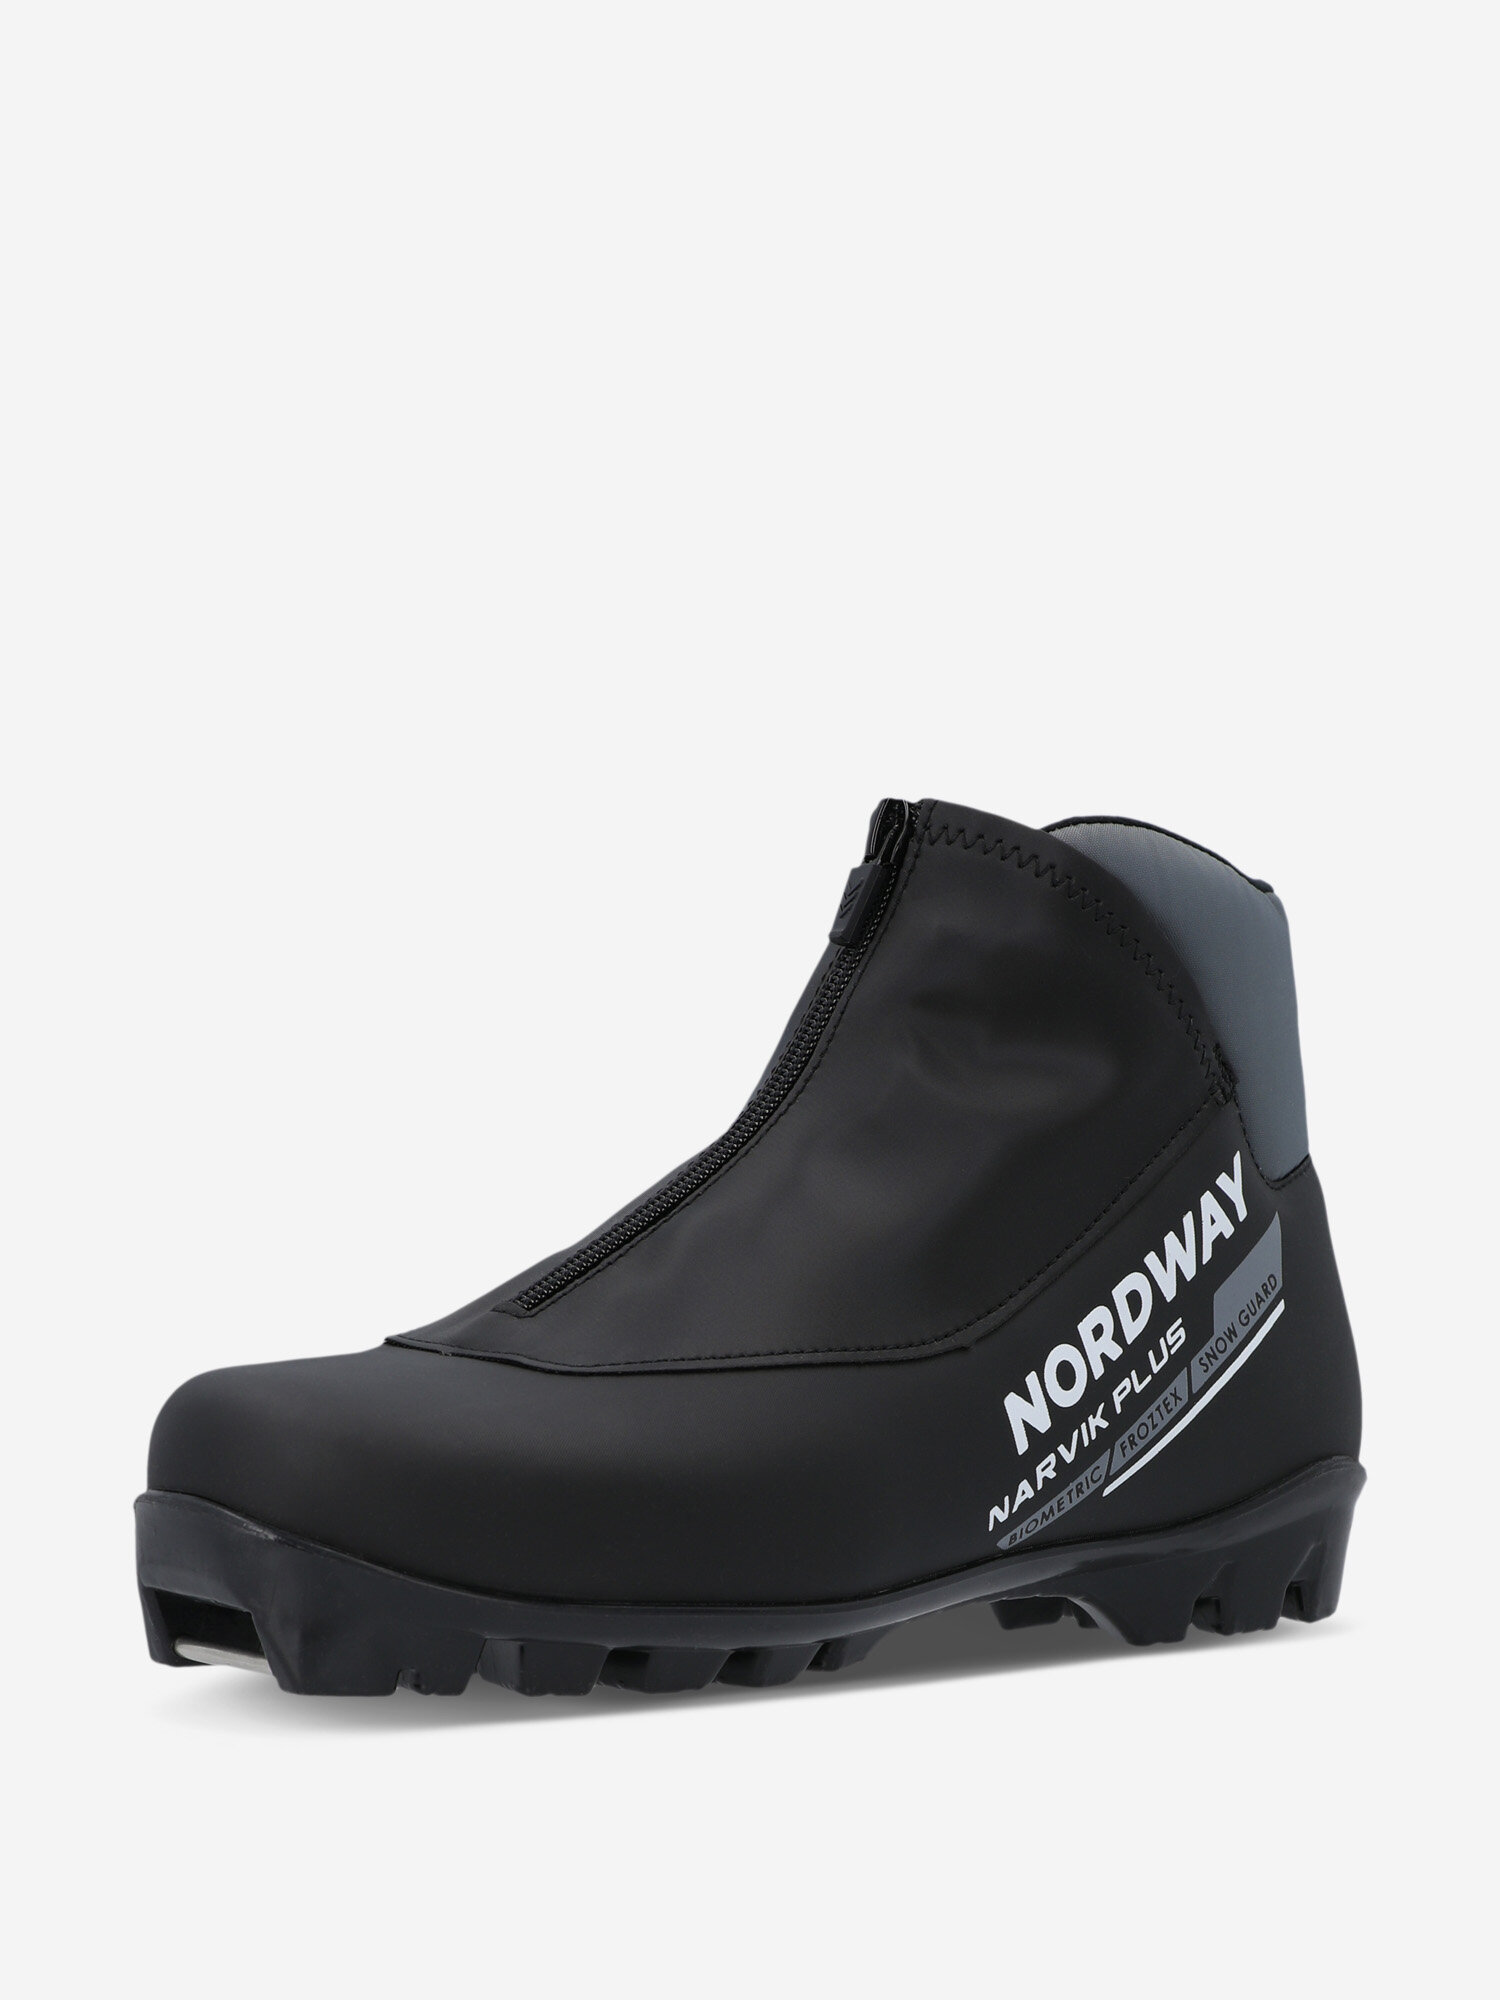 Ботинки для беговых лыж Nordway Narvik Plus NNN Черный; RUS: 40, Ориг: 41